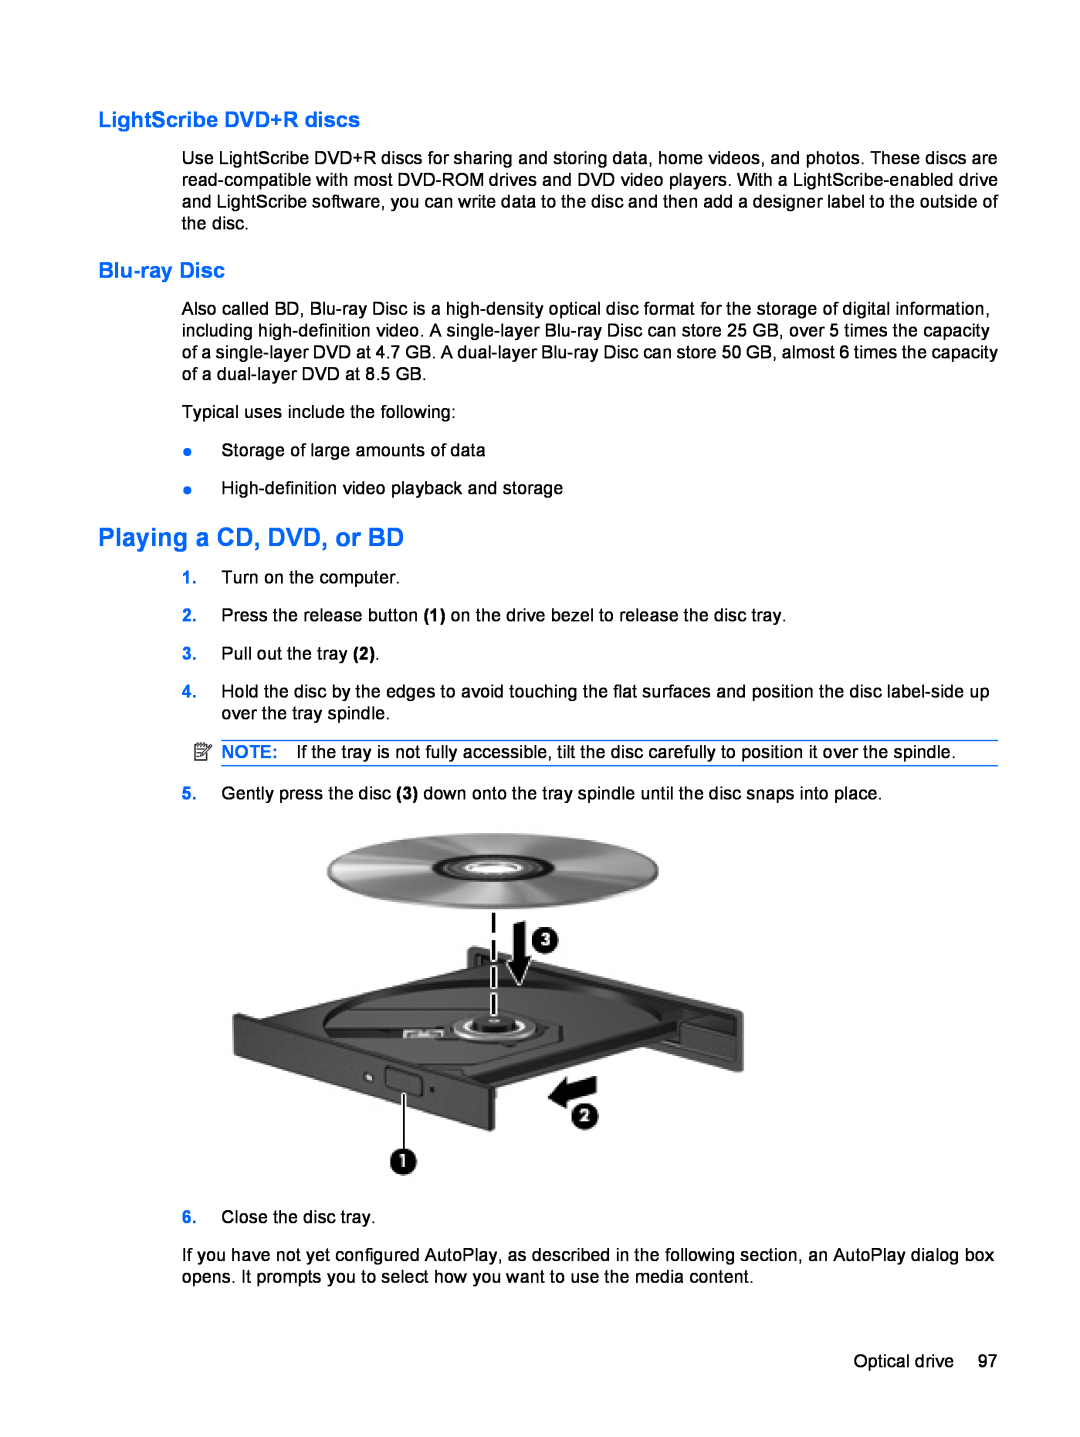 HP dv4-2160us manual Playing a CD, DVD, or BD, LightScribe DVD+R discs, Blu-ray Disc 